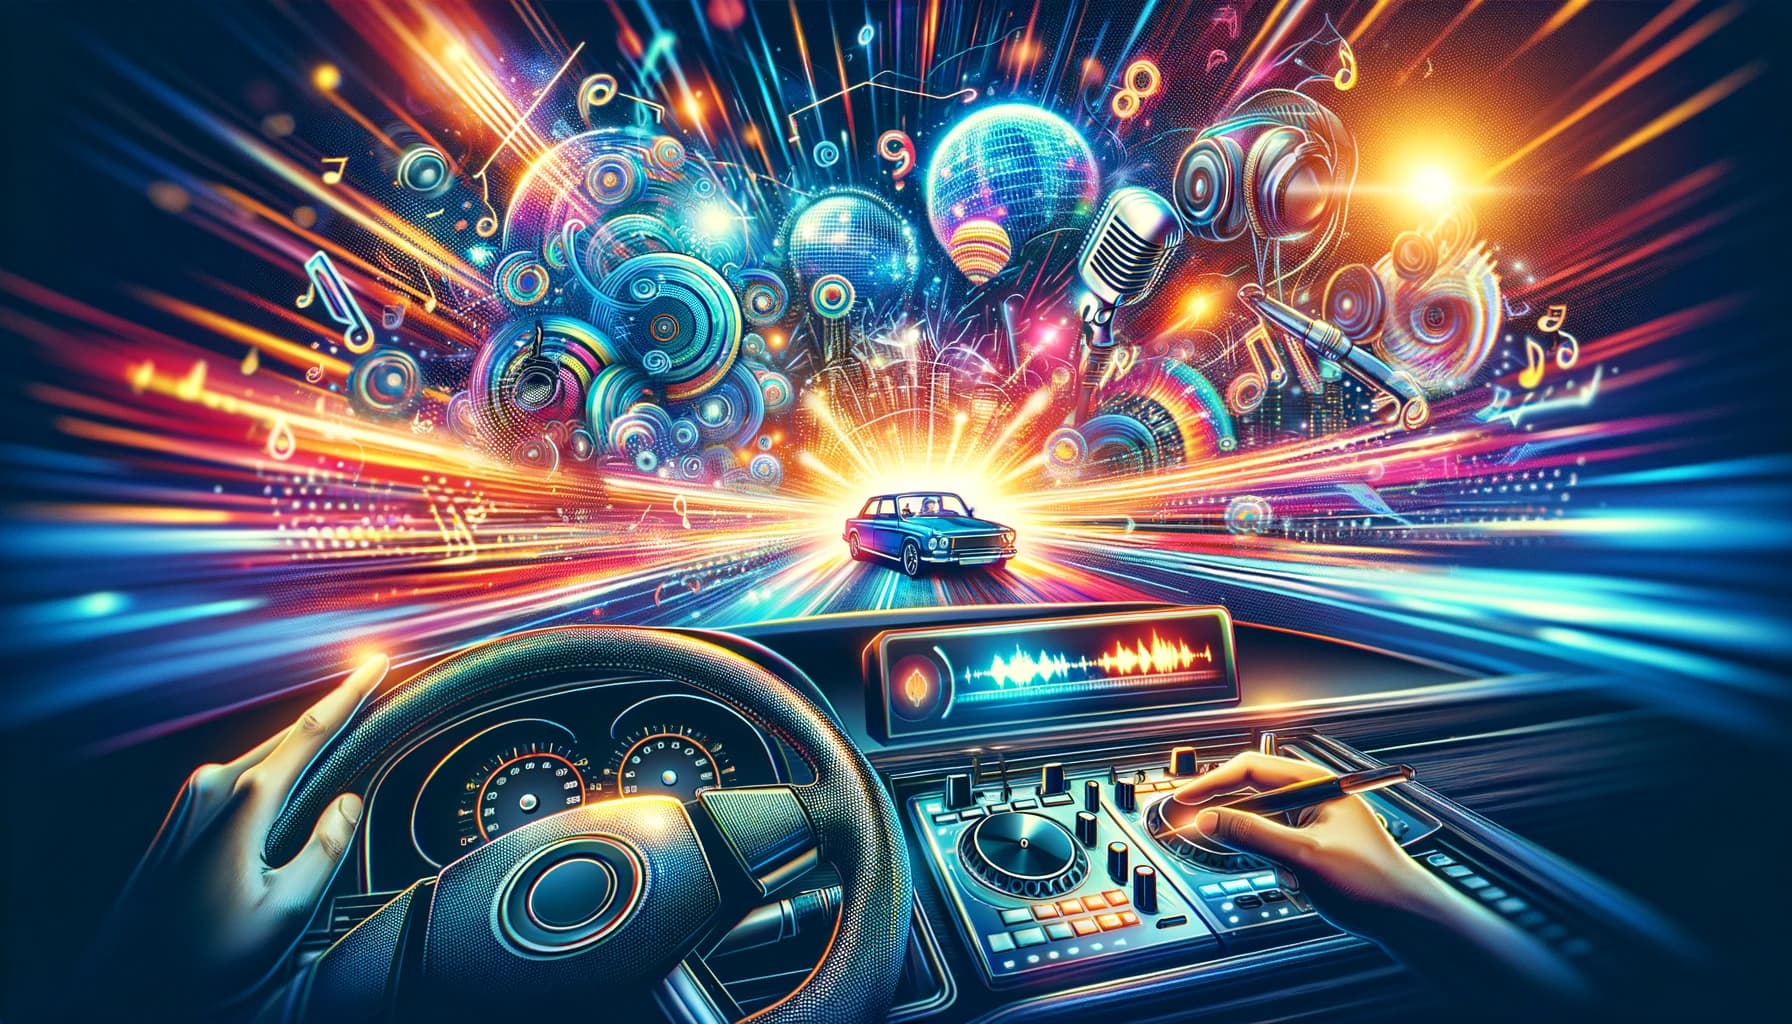 车载DJ舞曲、夜店蹦迪、DJ打碟串烧（3000首）：驾驶与音乐融合乐趣